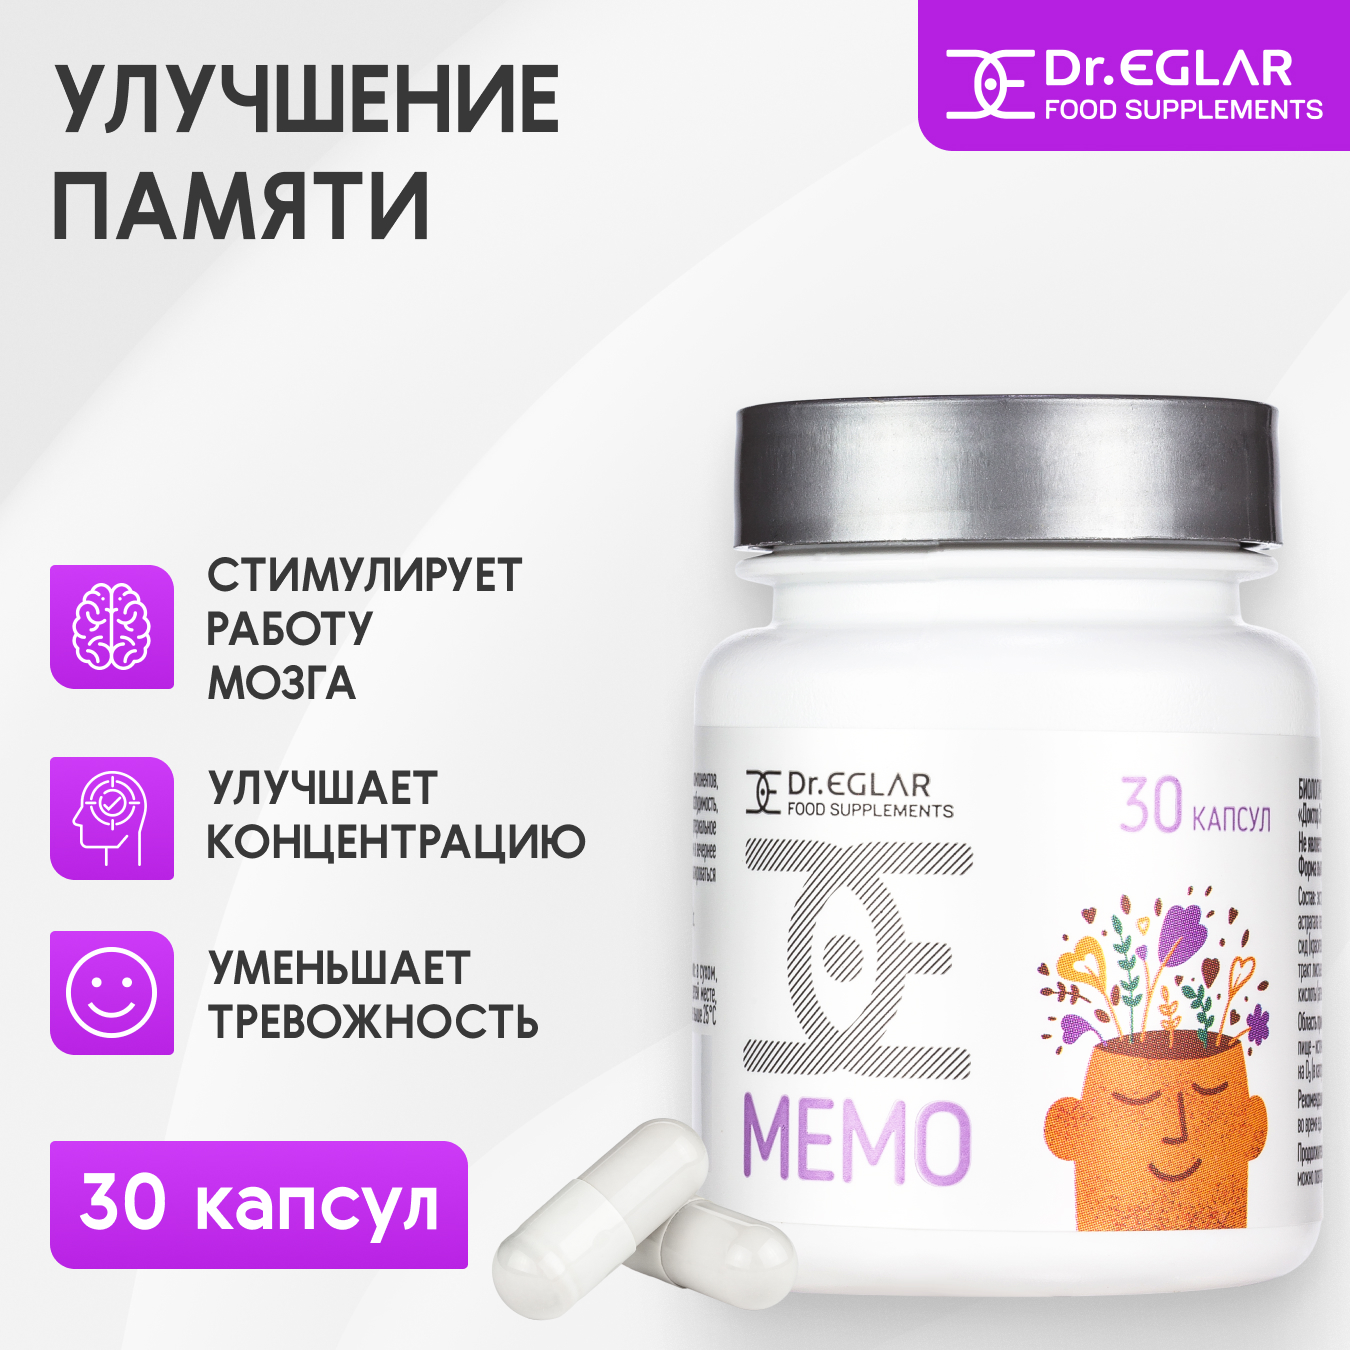 Купить 00-00002926, Витаминный комплекс Dr.Eglar MEMO для мозговой активности и памяти 450 мг, 30 капсул, Dr. Eglar